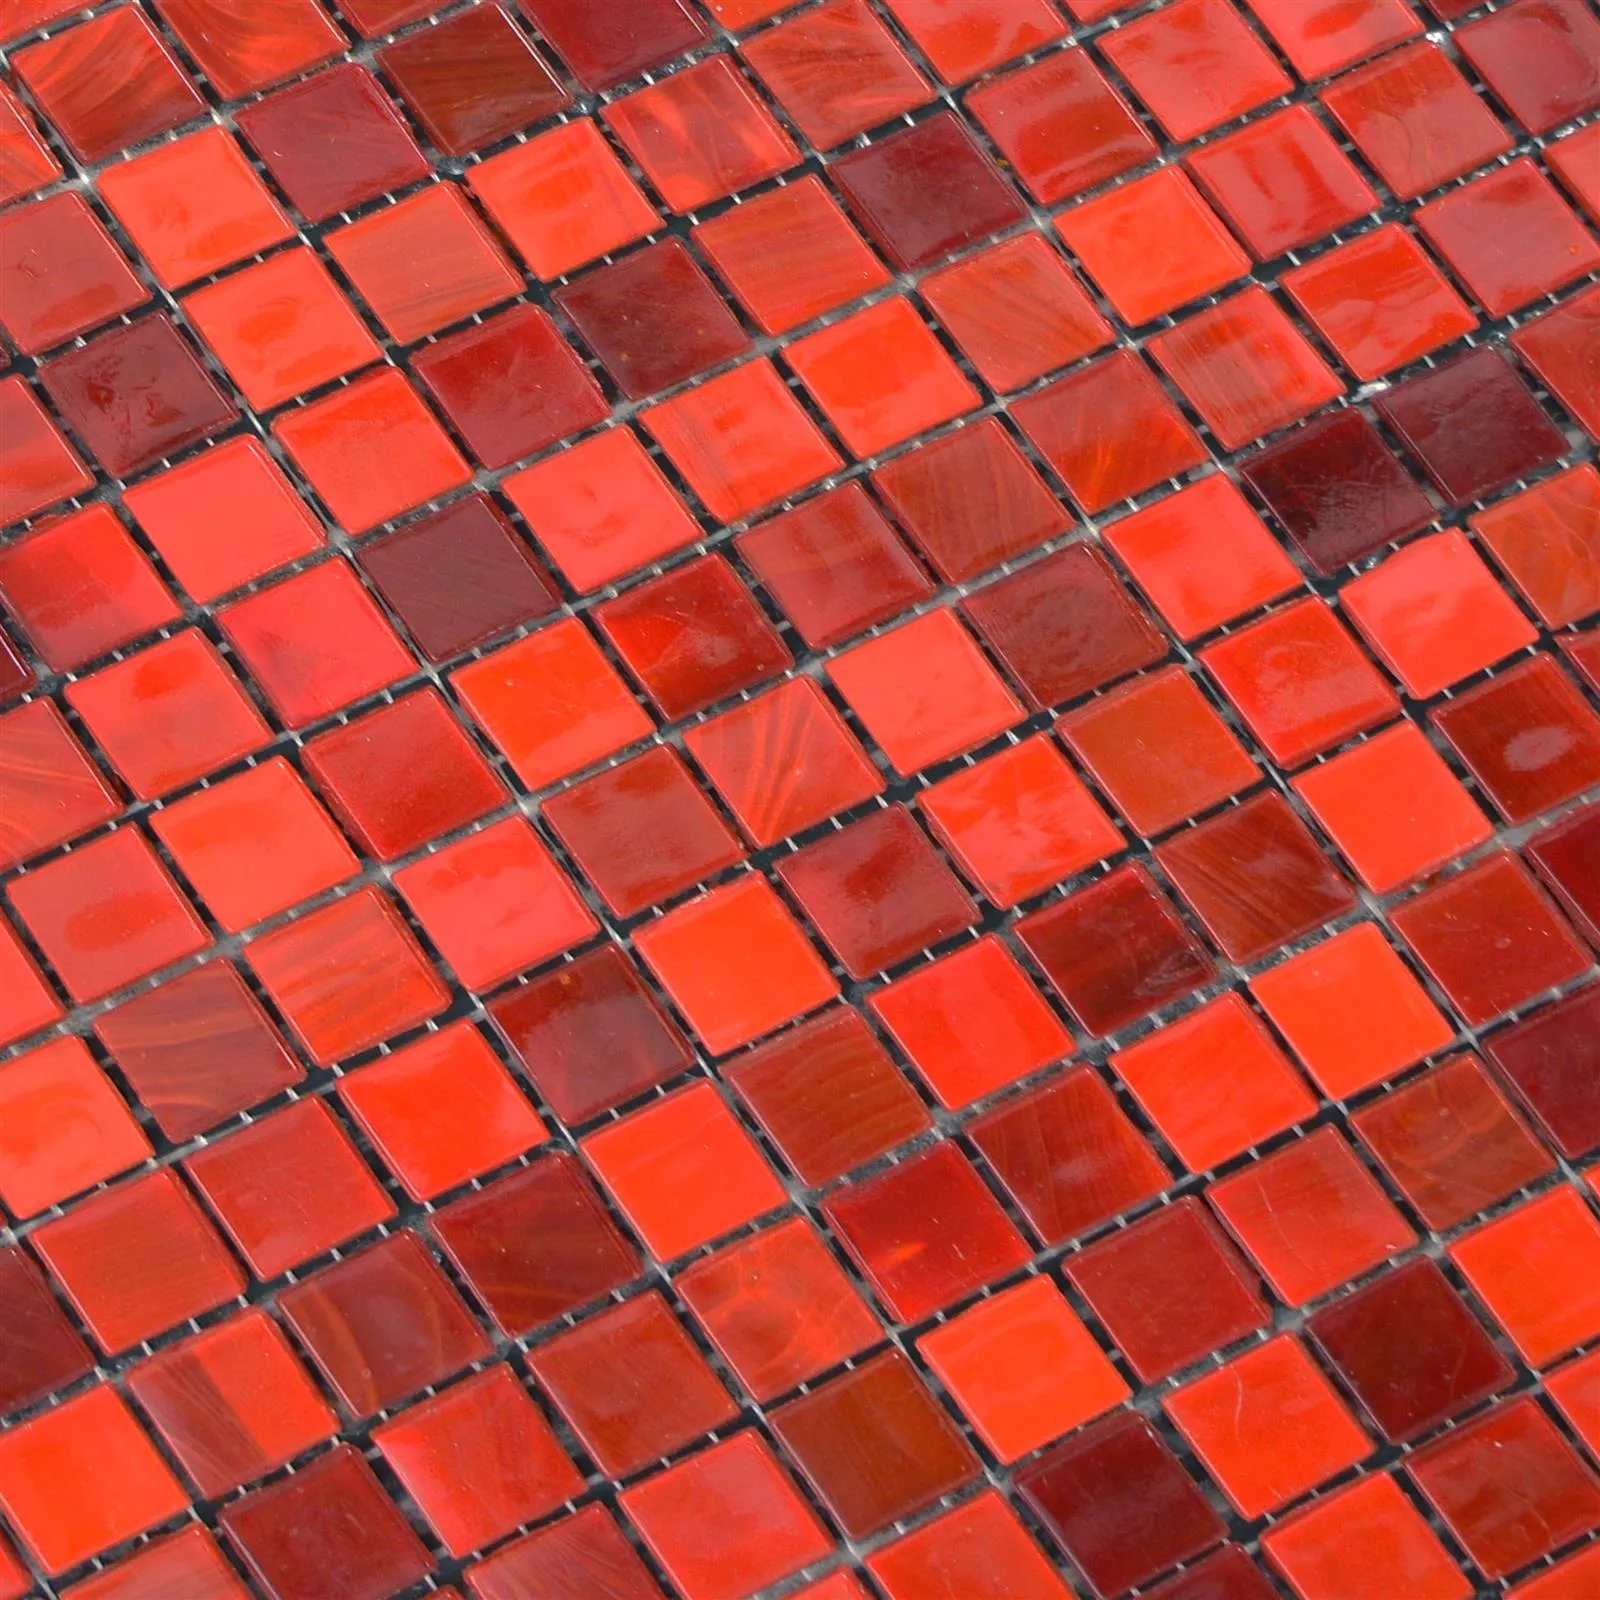 Vidro Azulejo Mosaico Rexford Efeito Madrepérola Vermelho